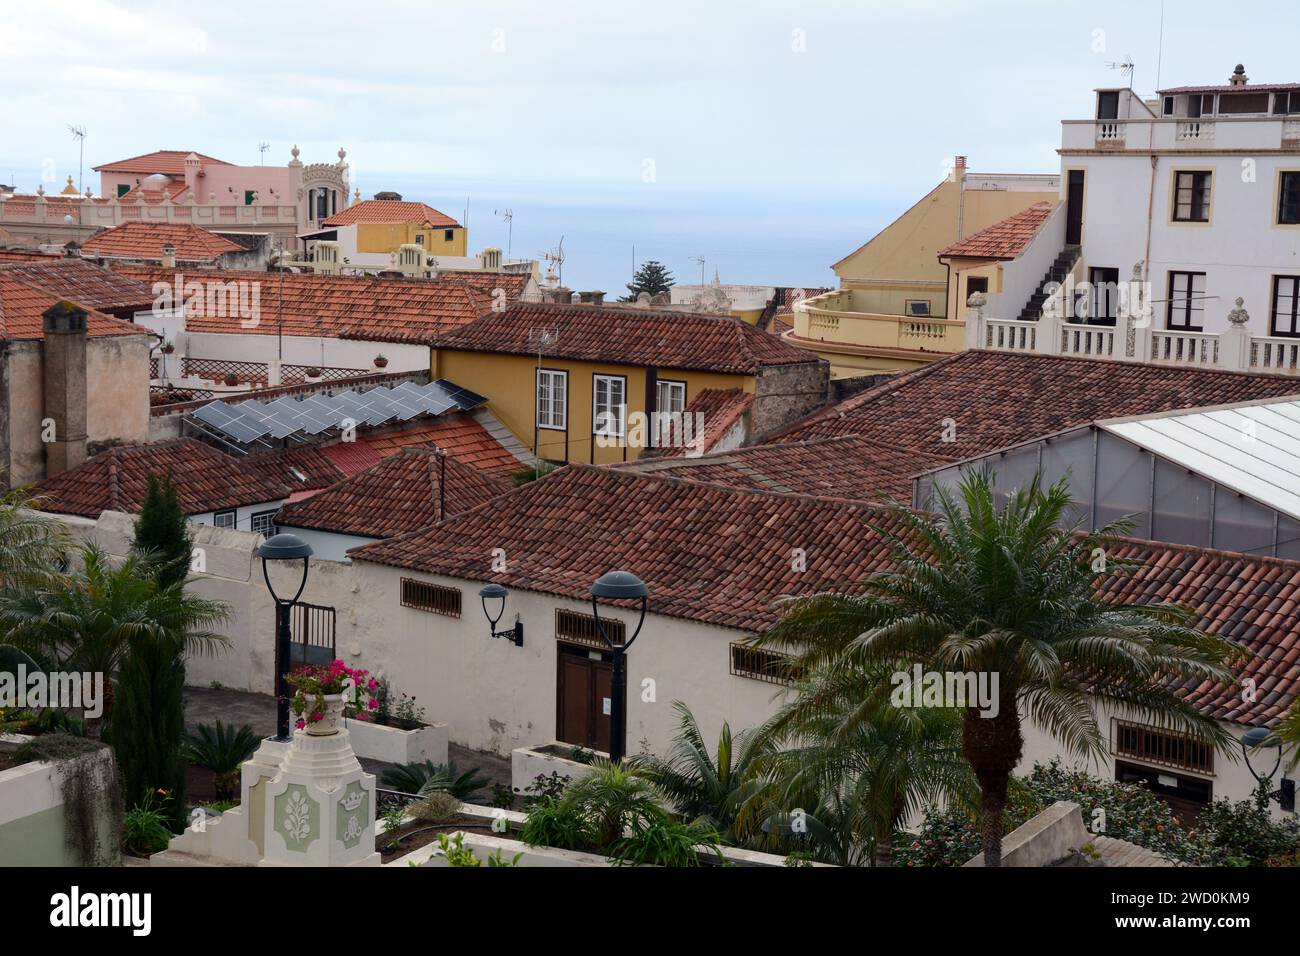 Der Blick auf das Meer über spanische Dächer und alte Kolonialhäuser und Villen in der Stadt La Oratova, Teneriffa, Kanarische Inseln, Spanien. Stockfoto